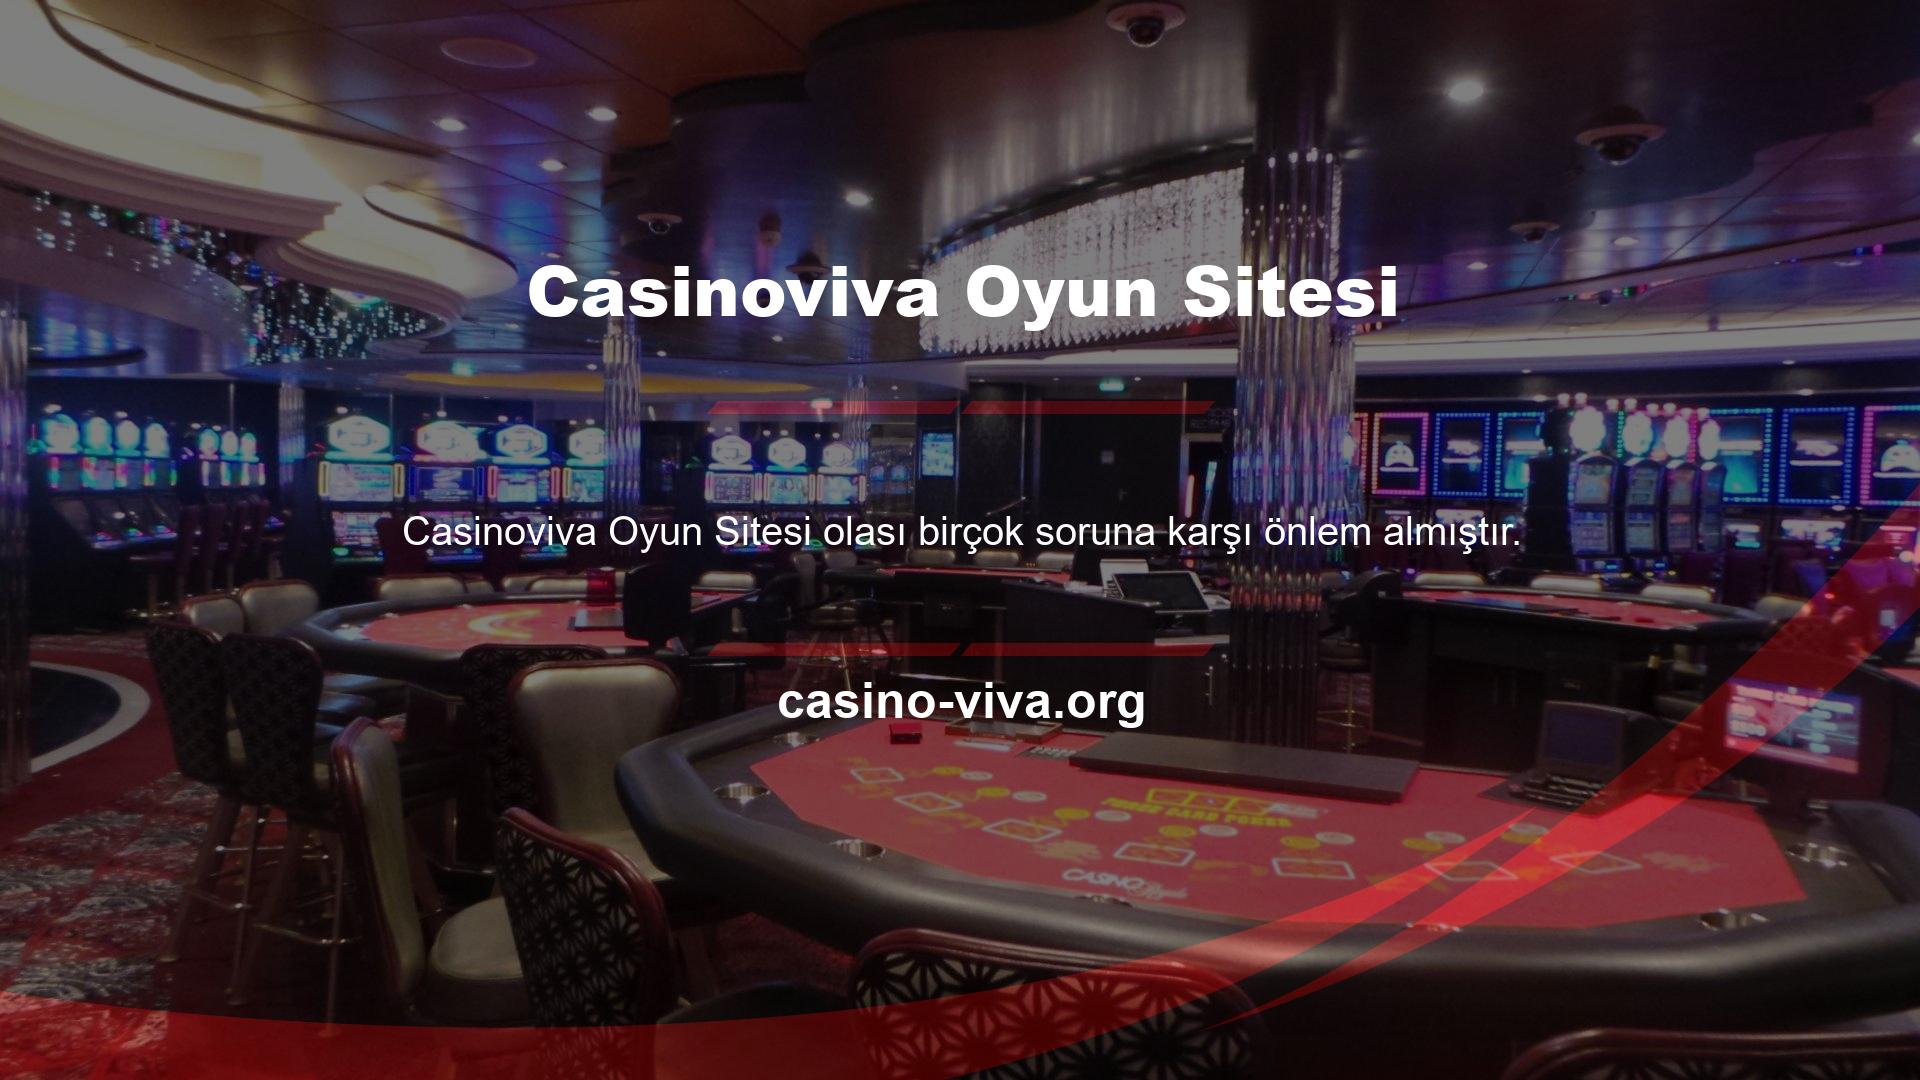 Casinoviva Bahis müşteri hizmetleri bu amaçla oluşturulmuştur